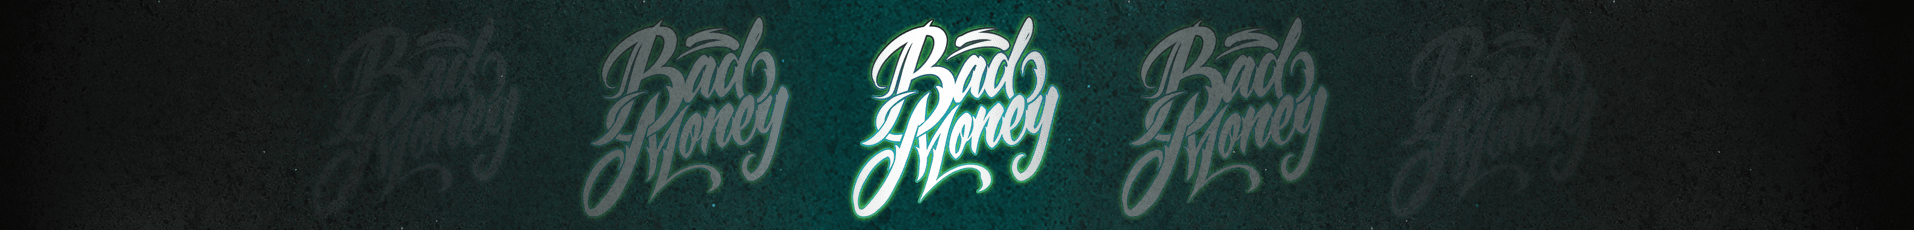 badmoney banner